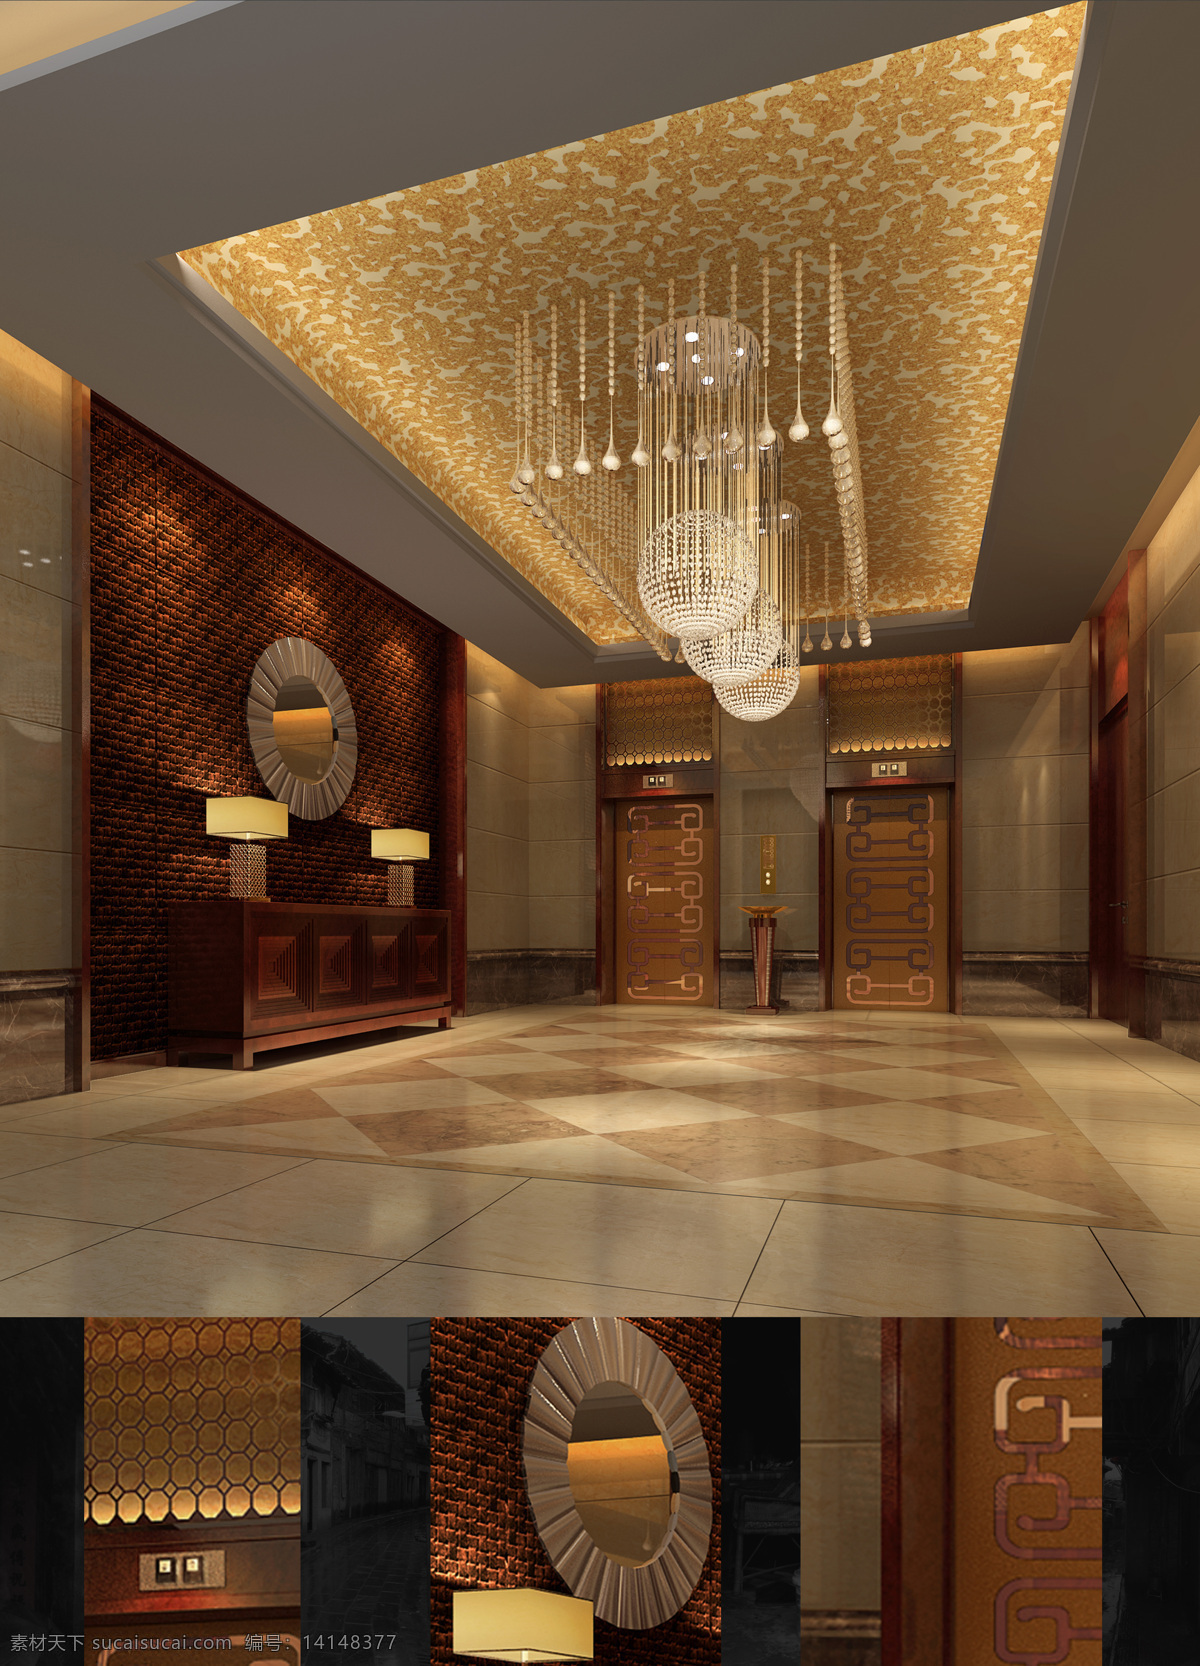 宾馆 大堂 电梯 环境设计 酒店 室内 室内设计 厅 效果图 设计素材 模板下载 家居装饰素材